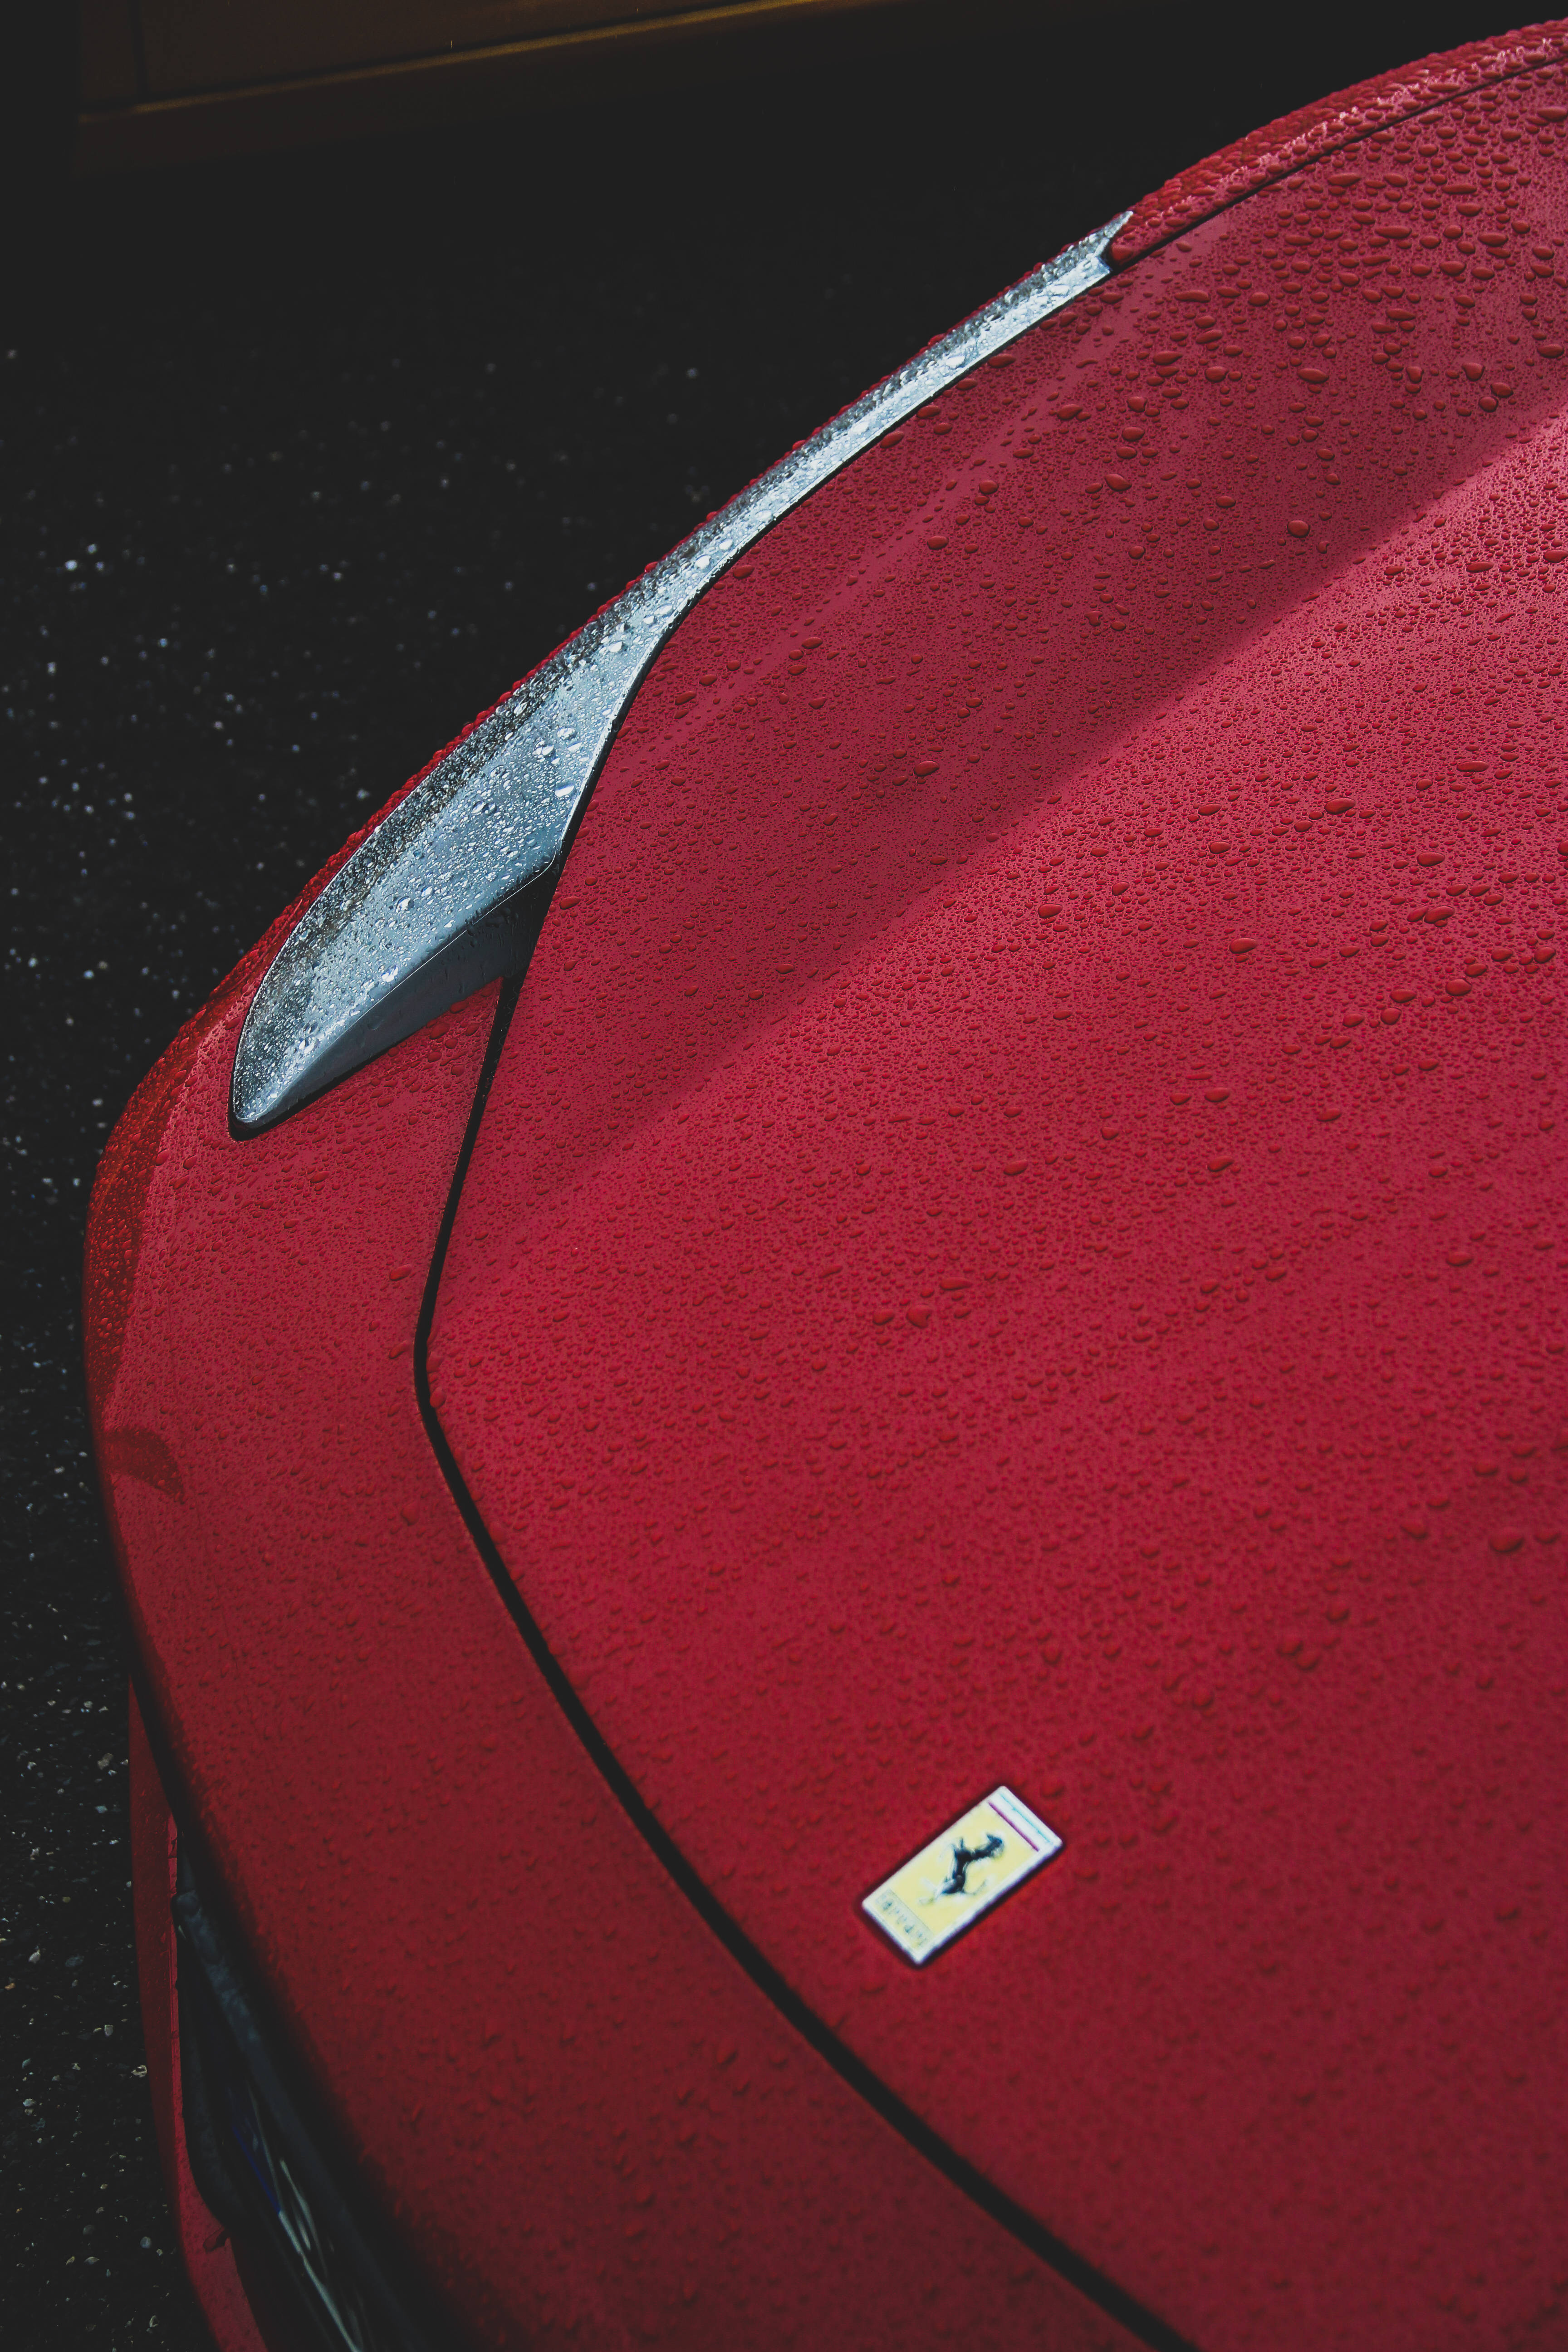 Red Ferrari Hood Background